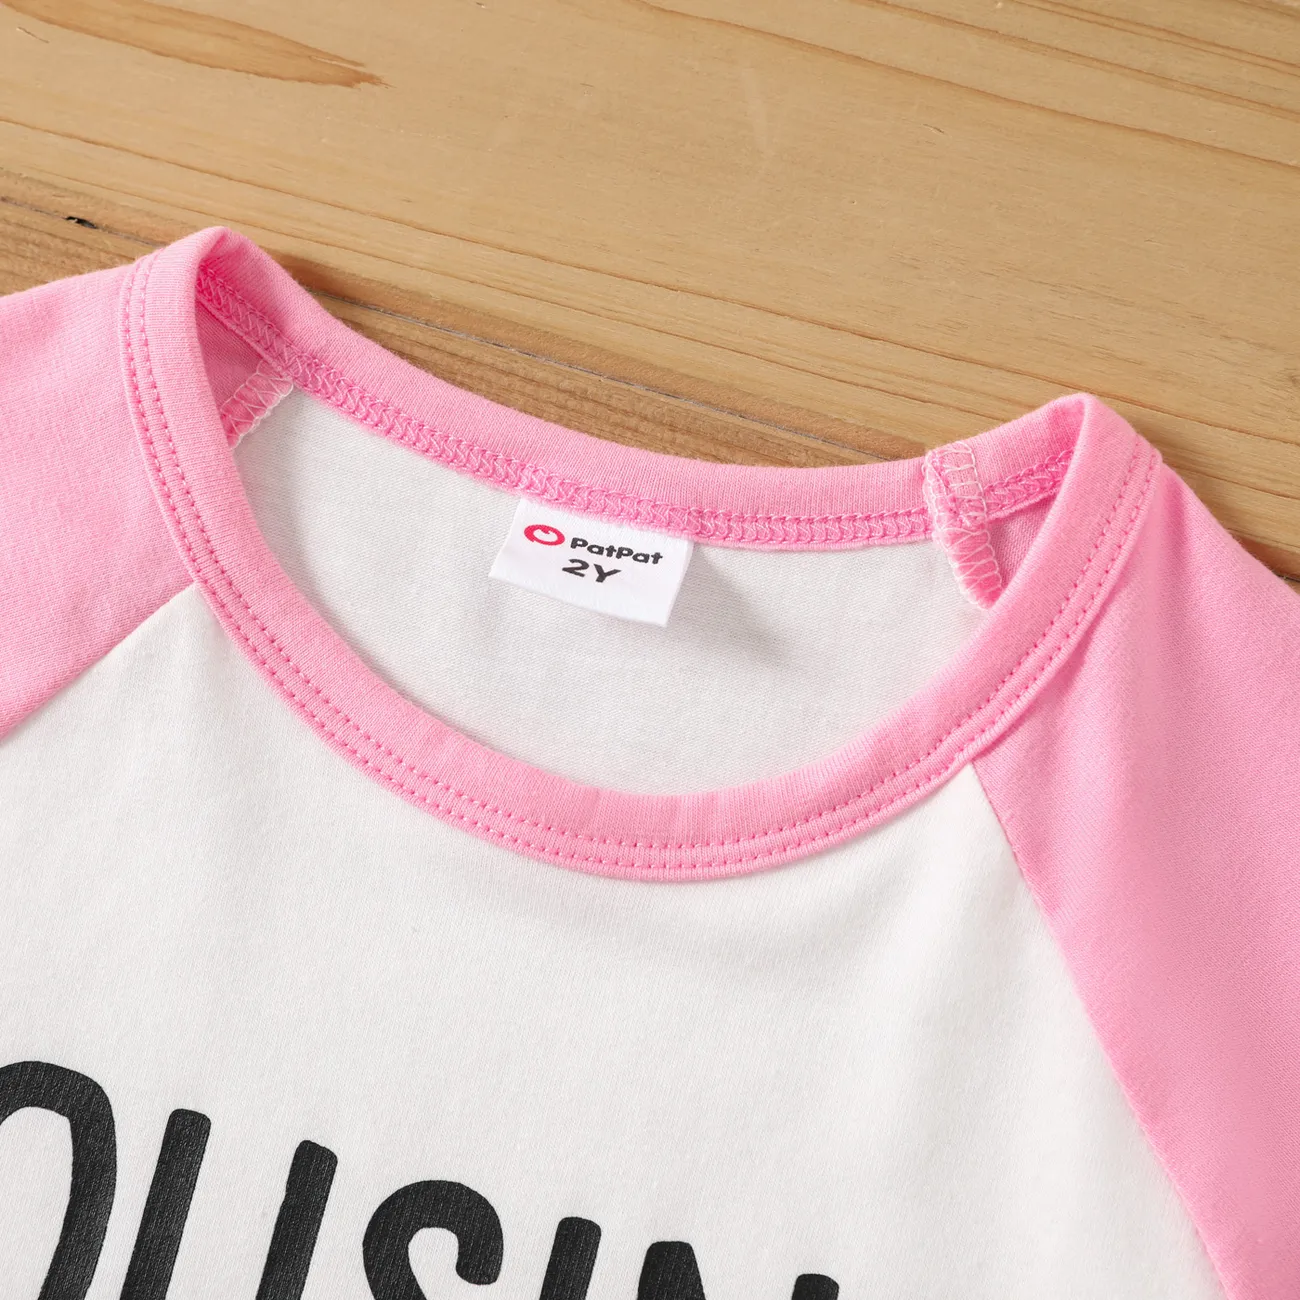 Enfant en bas âge Unisexe Couture de tissus Basique Manches longues T-Shirt roséblanc big image 1